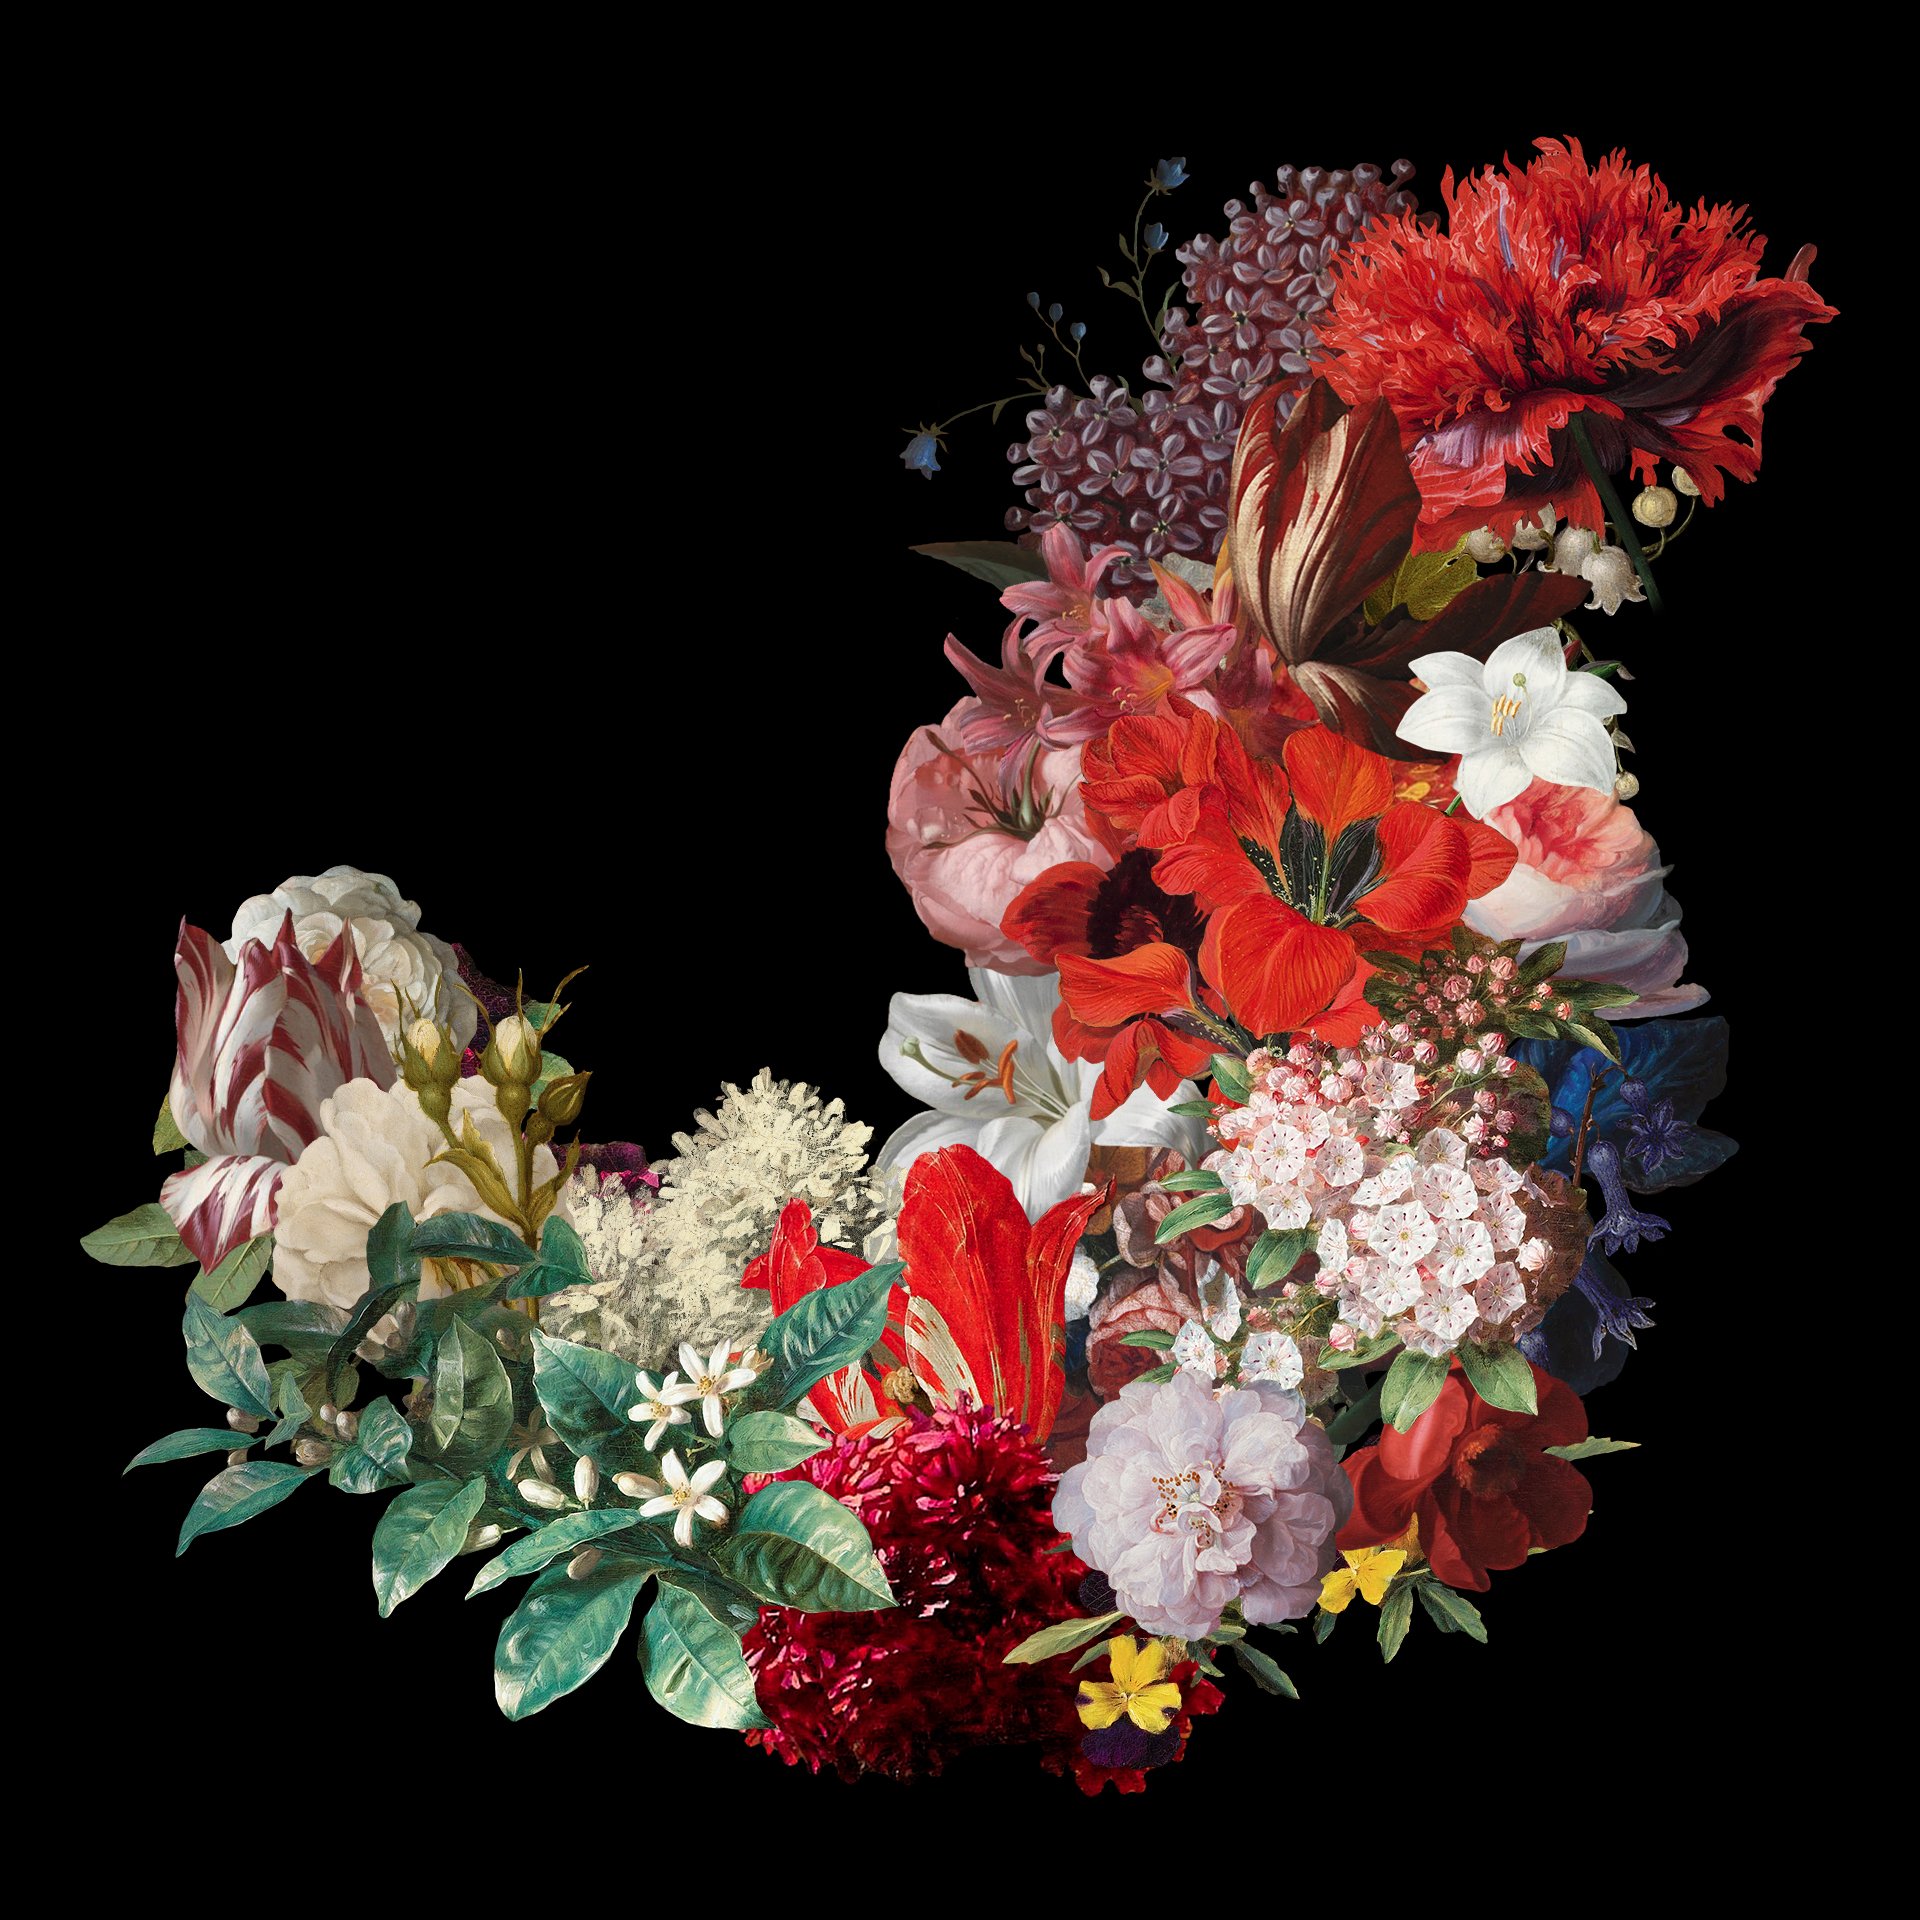 100多种复古花卉古典艺术品图像集合 Kurohana – Moody Florals Collection 图片素材 第6张